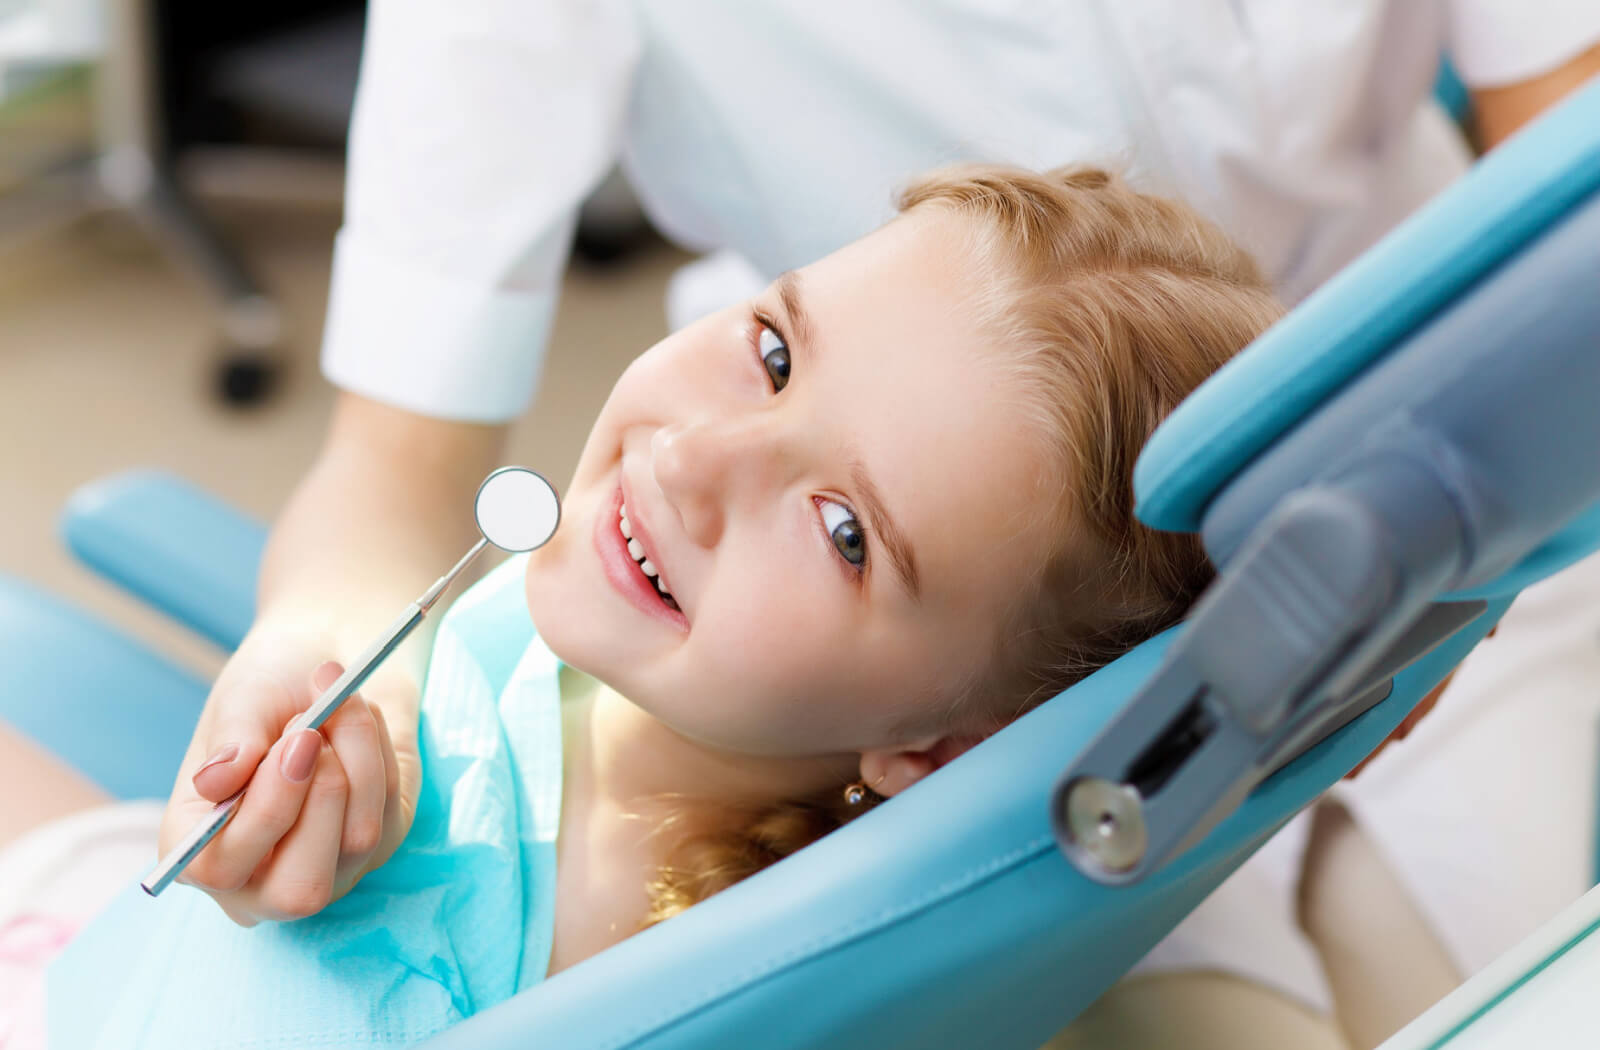 A dentist checking a child's teeth using a dental mirror